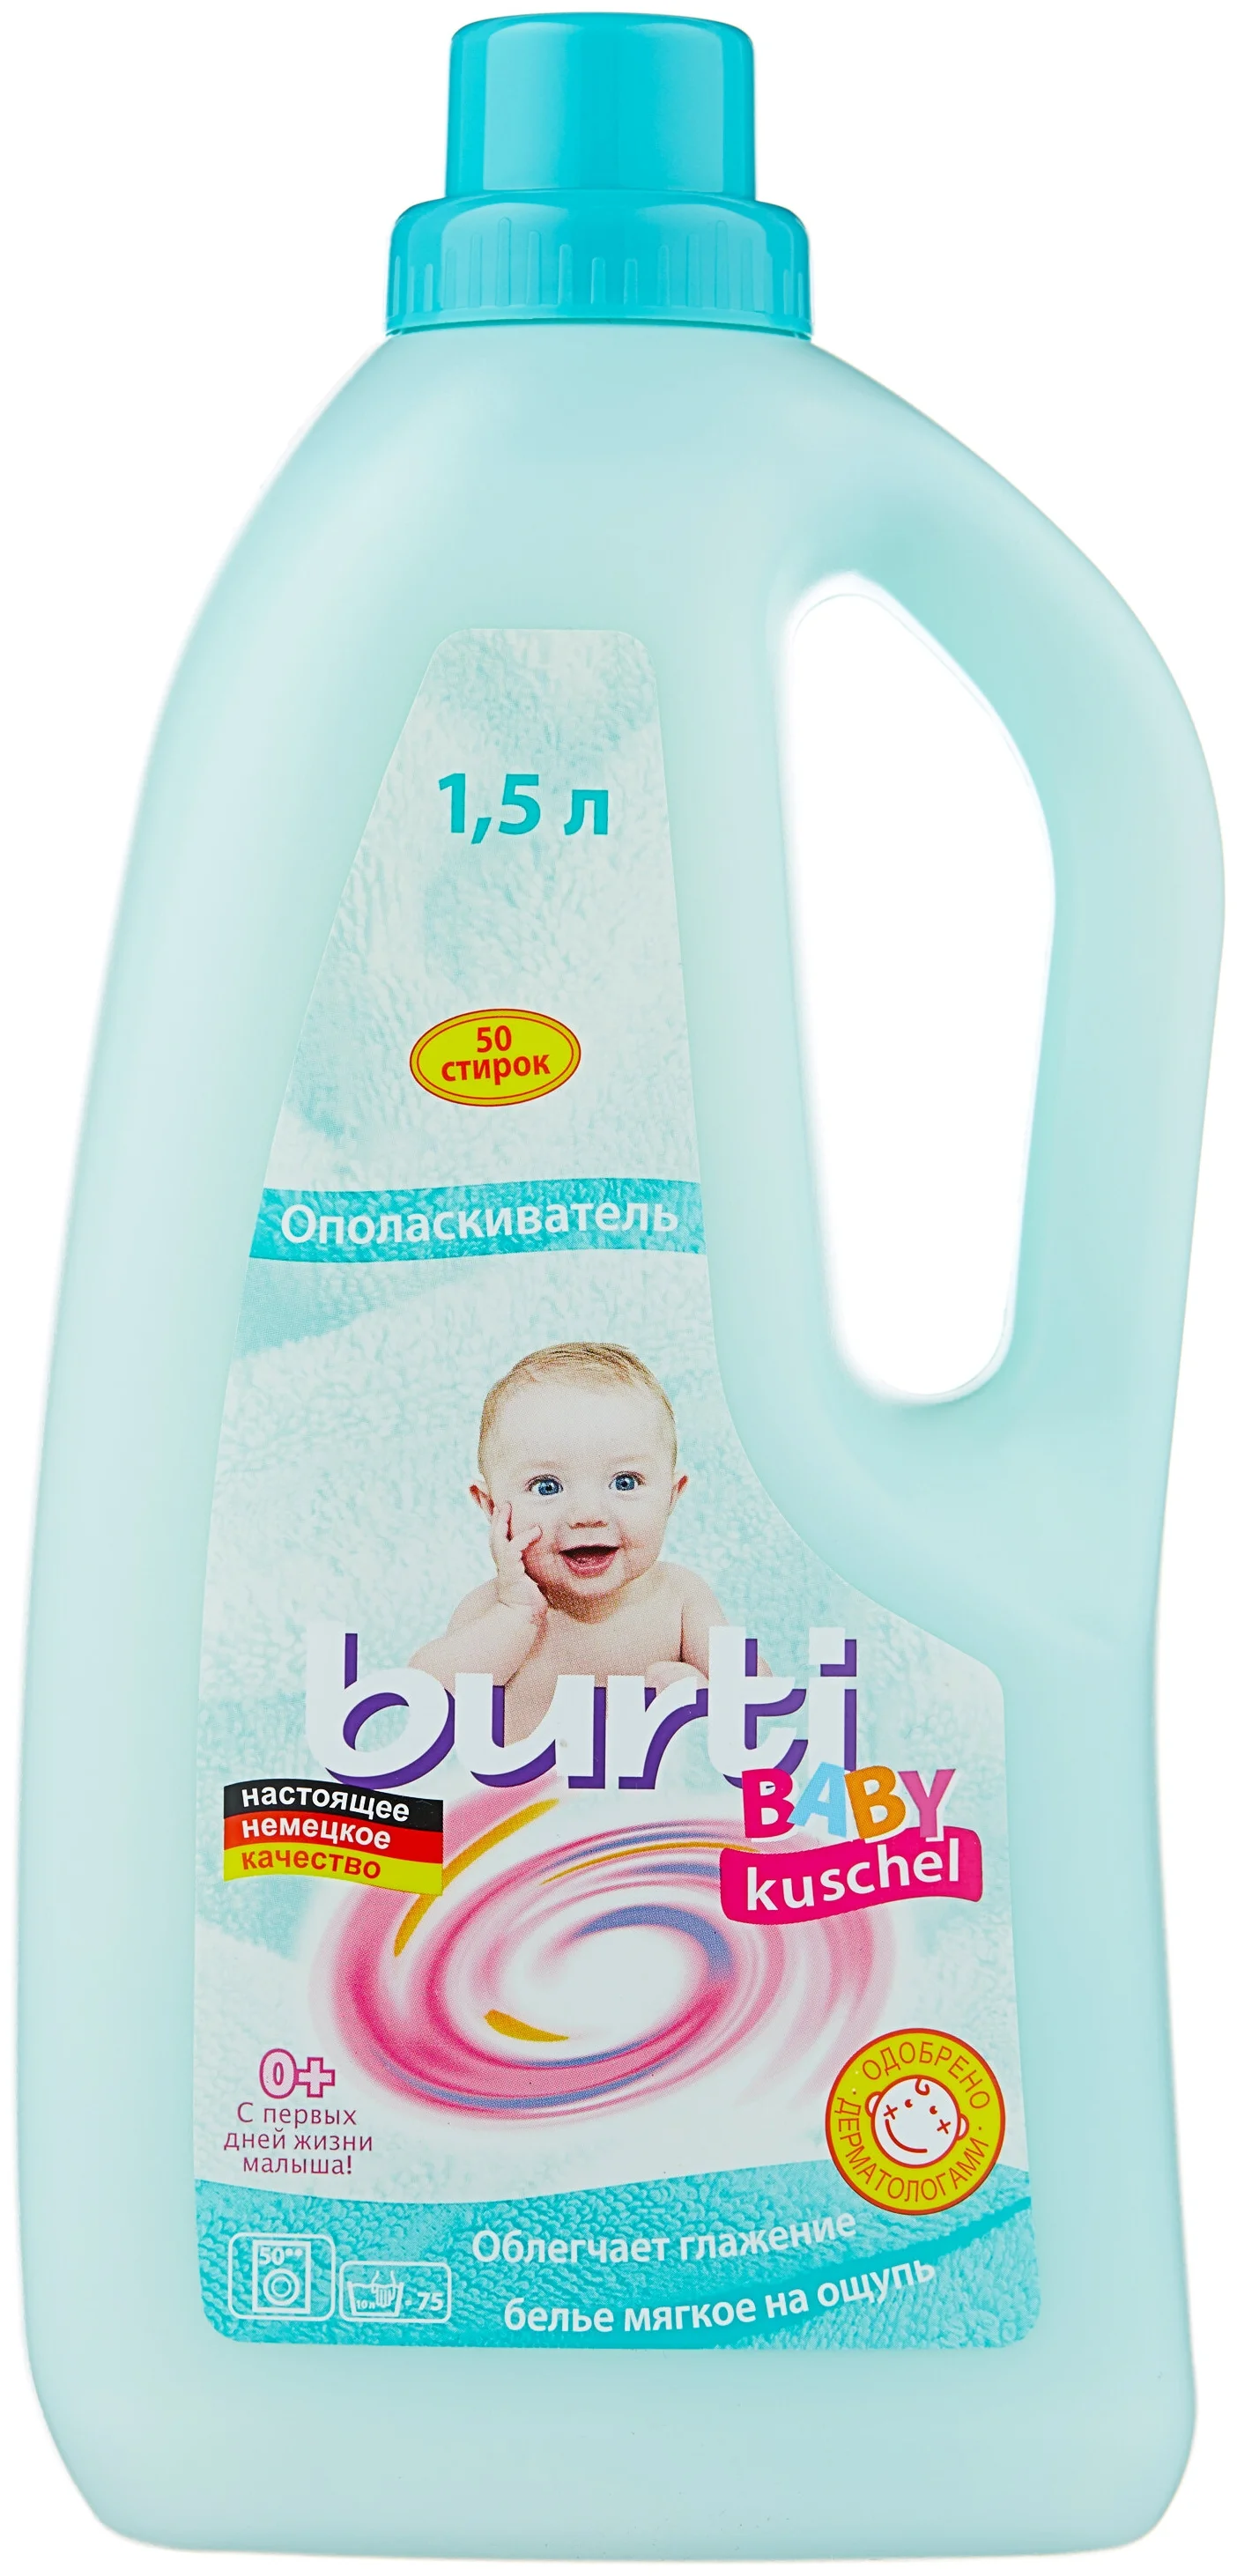 Burti Baby Kushel - назначение: для шерсти и шелка, для детского белья, для нижнего белья, для хлопковых тканей, для цветных тканей, для синтетических тканей, для белых и светлых тканей, для черных и темных тканей